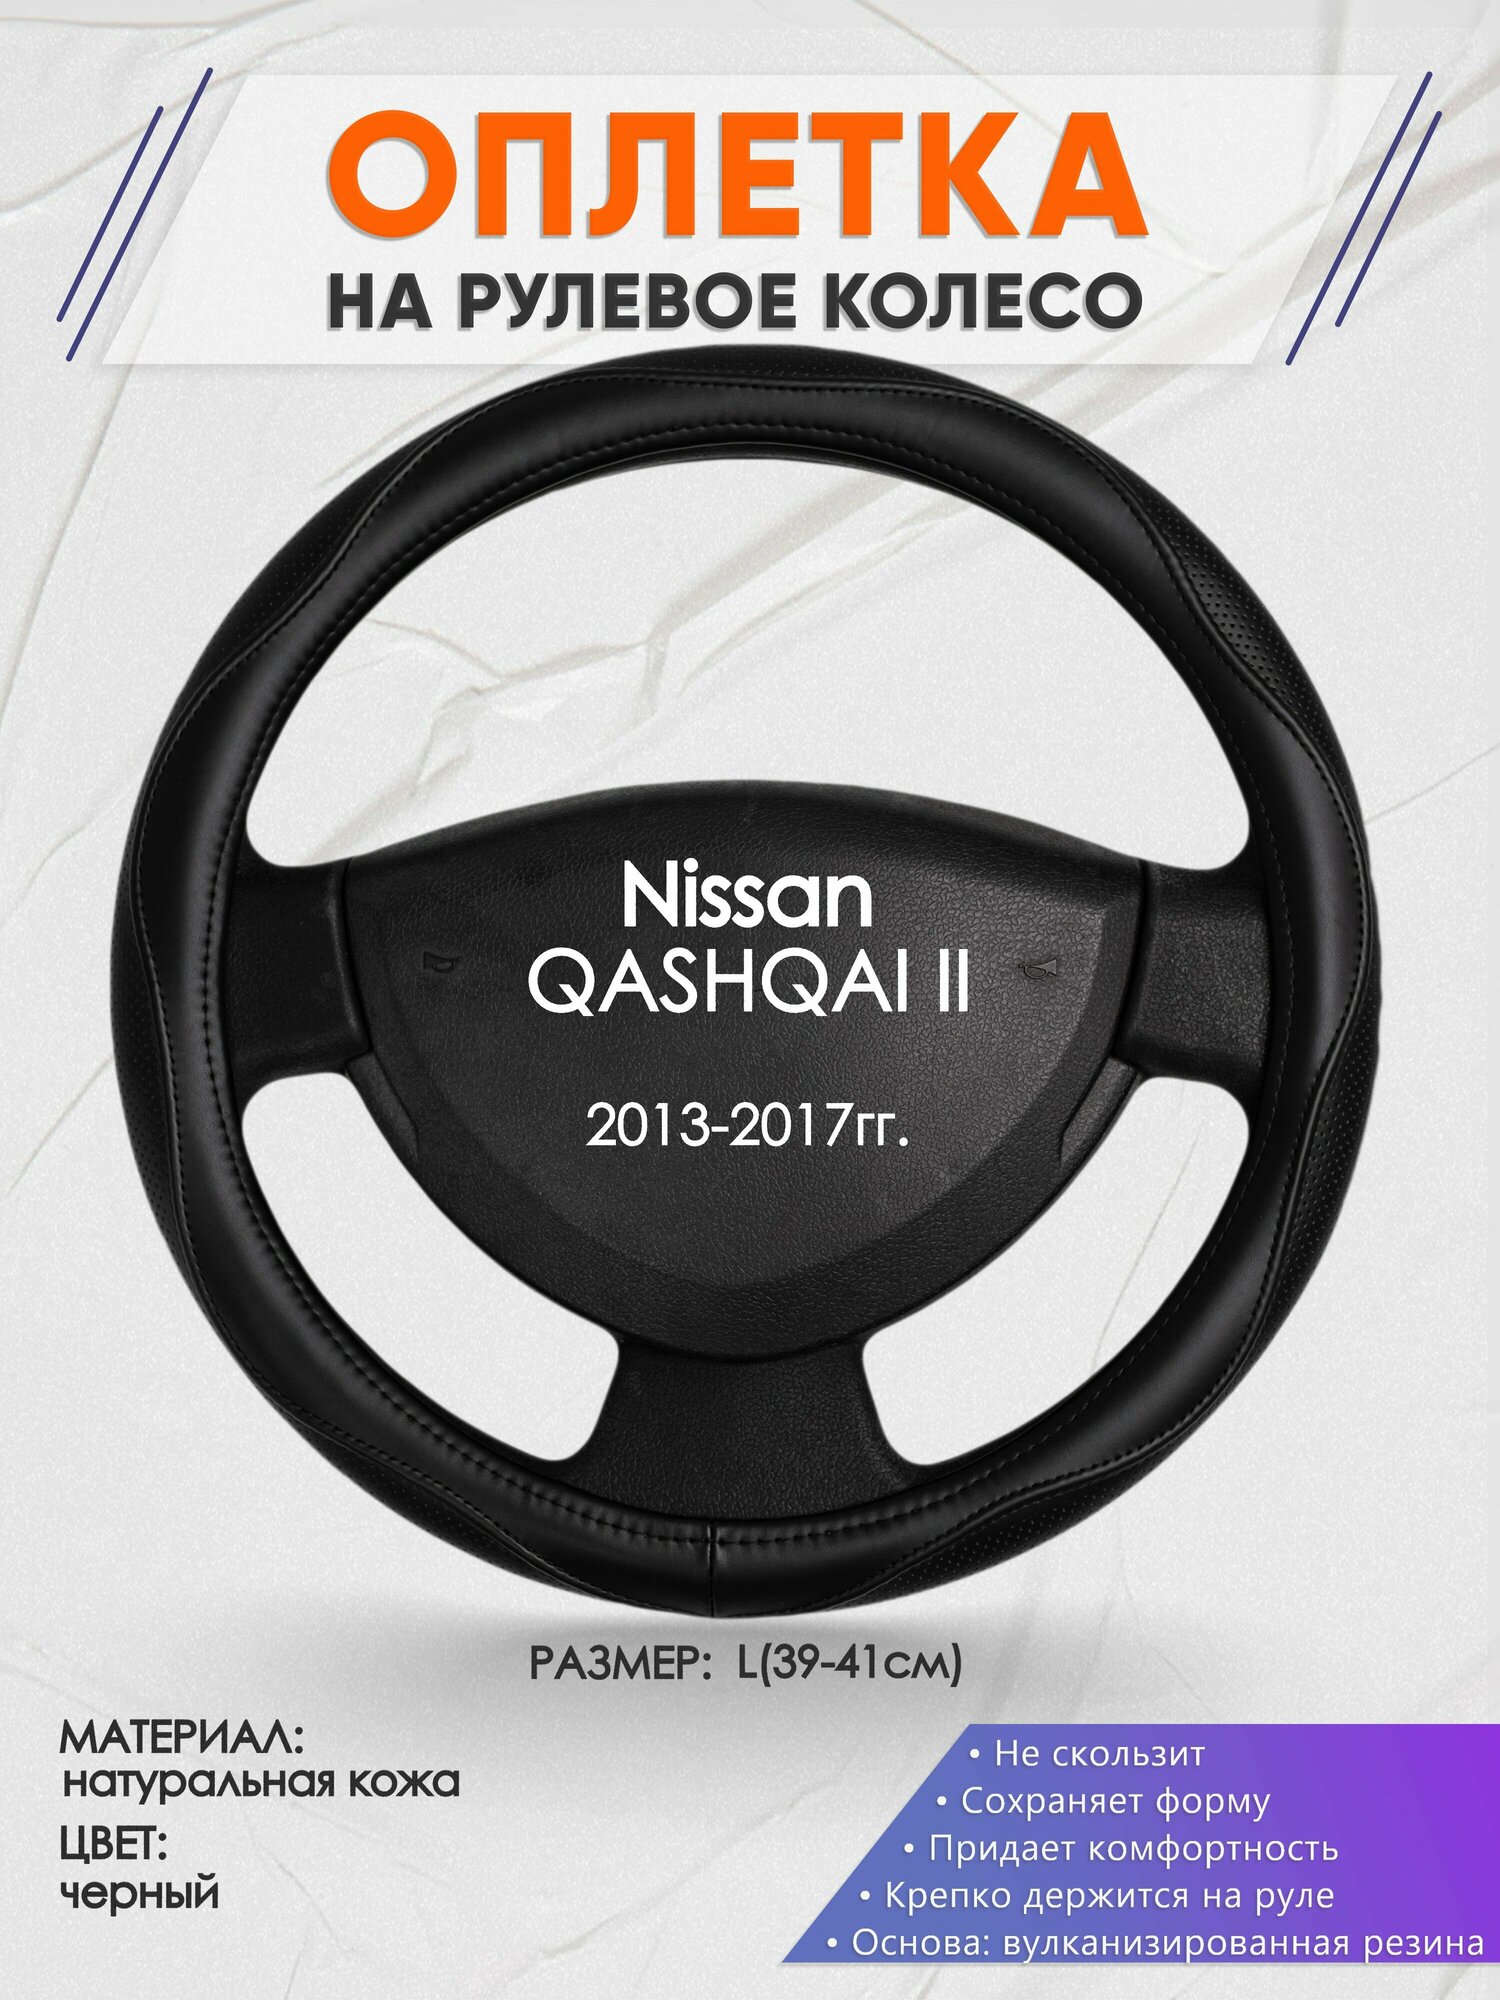 Оплетка на руль для Nissan QASHQAI 2(Ниссан Кашкай 2) 2013-2017 L(39-41см) Натуральная кожа 29